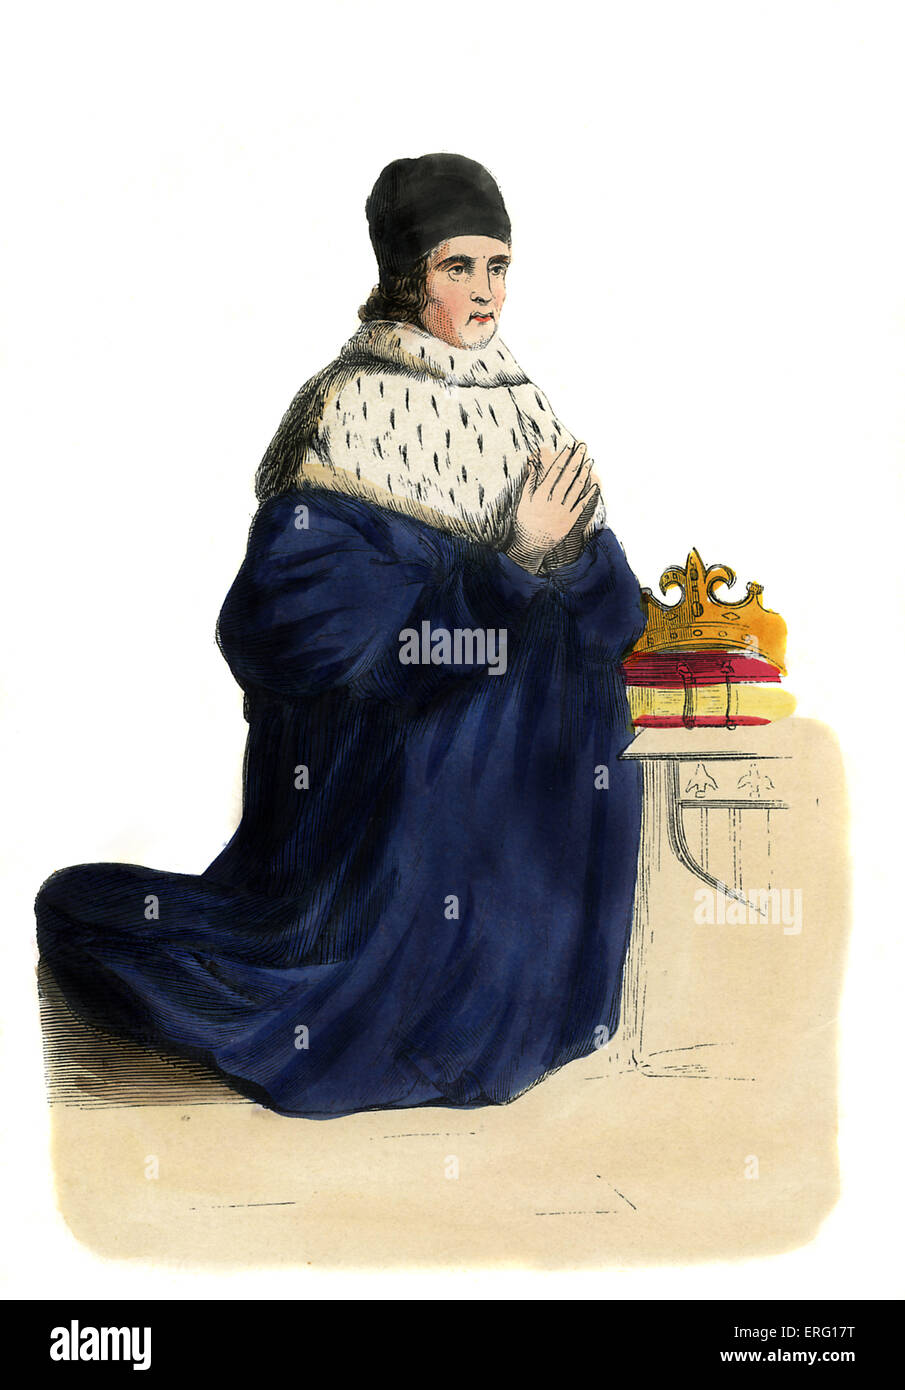 René di Anjou, il conte di Provenza, inginocchiato in preghiera posizione accanto a corona, indossando Navy Blue Velvet accappatoi, un ermellino cape, e un cappello nero. b. 1409 - 1480. c. 1847, dipinte a mano e copia di un dipinto ad Aix-en-Provence Cattedrale. Foto Stock